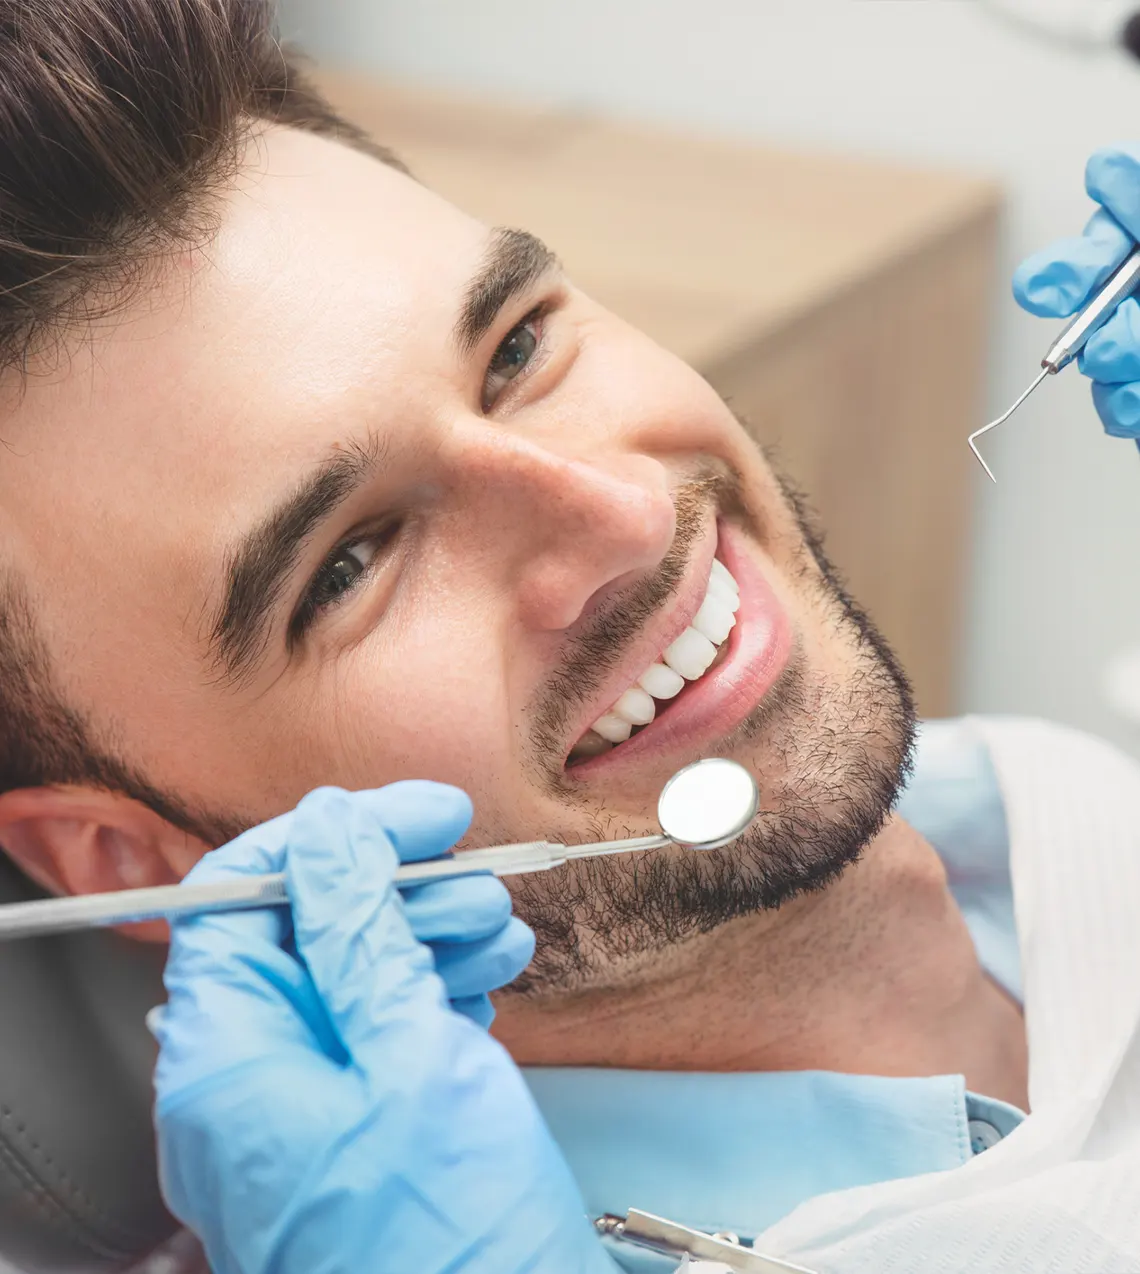 Stomatologia estetyczna przegląd zębów